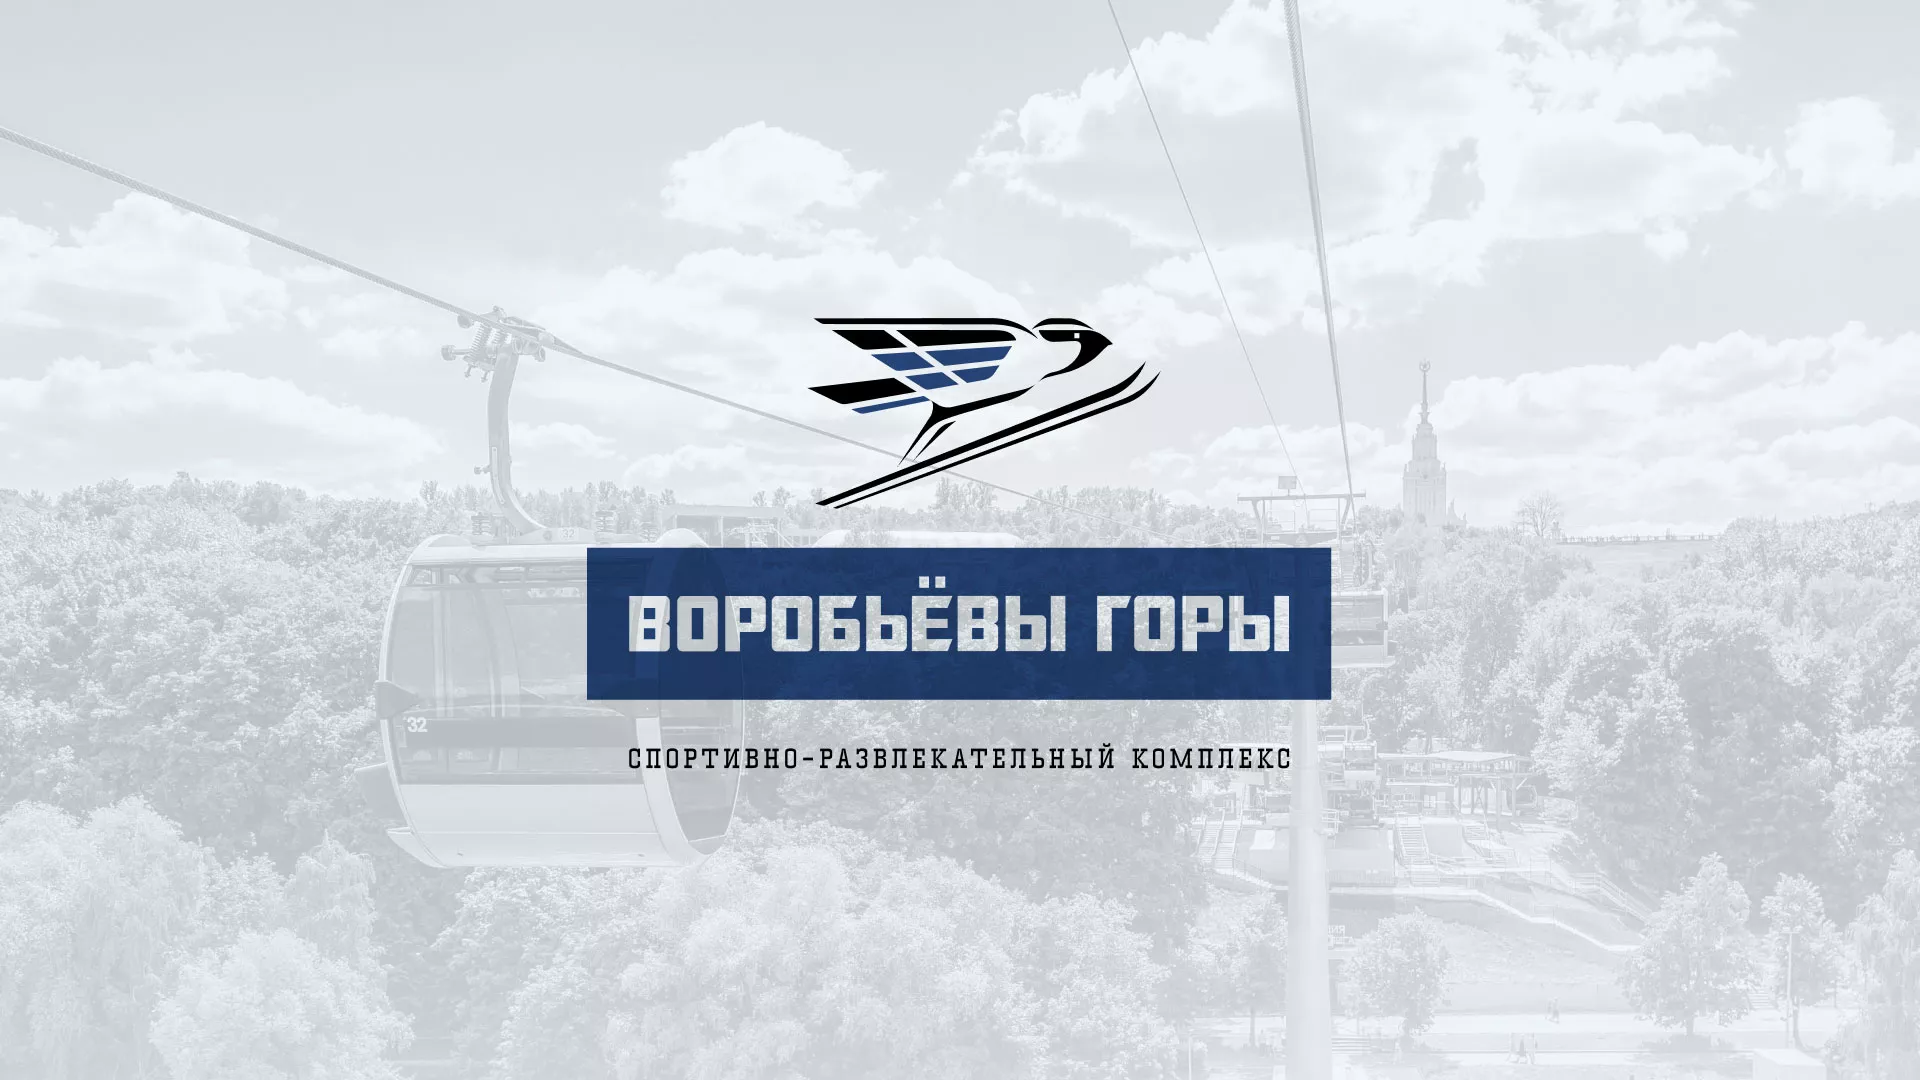 Разработка сайта в Северобайкальске для спортивно-развлекательного комплекса «Воробьёвы горы»